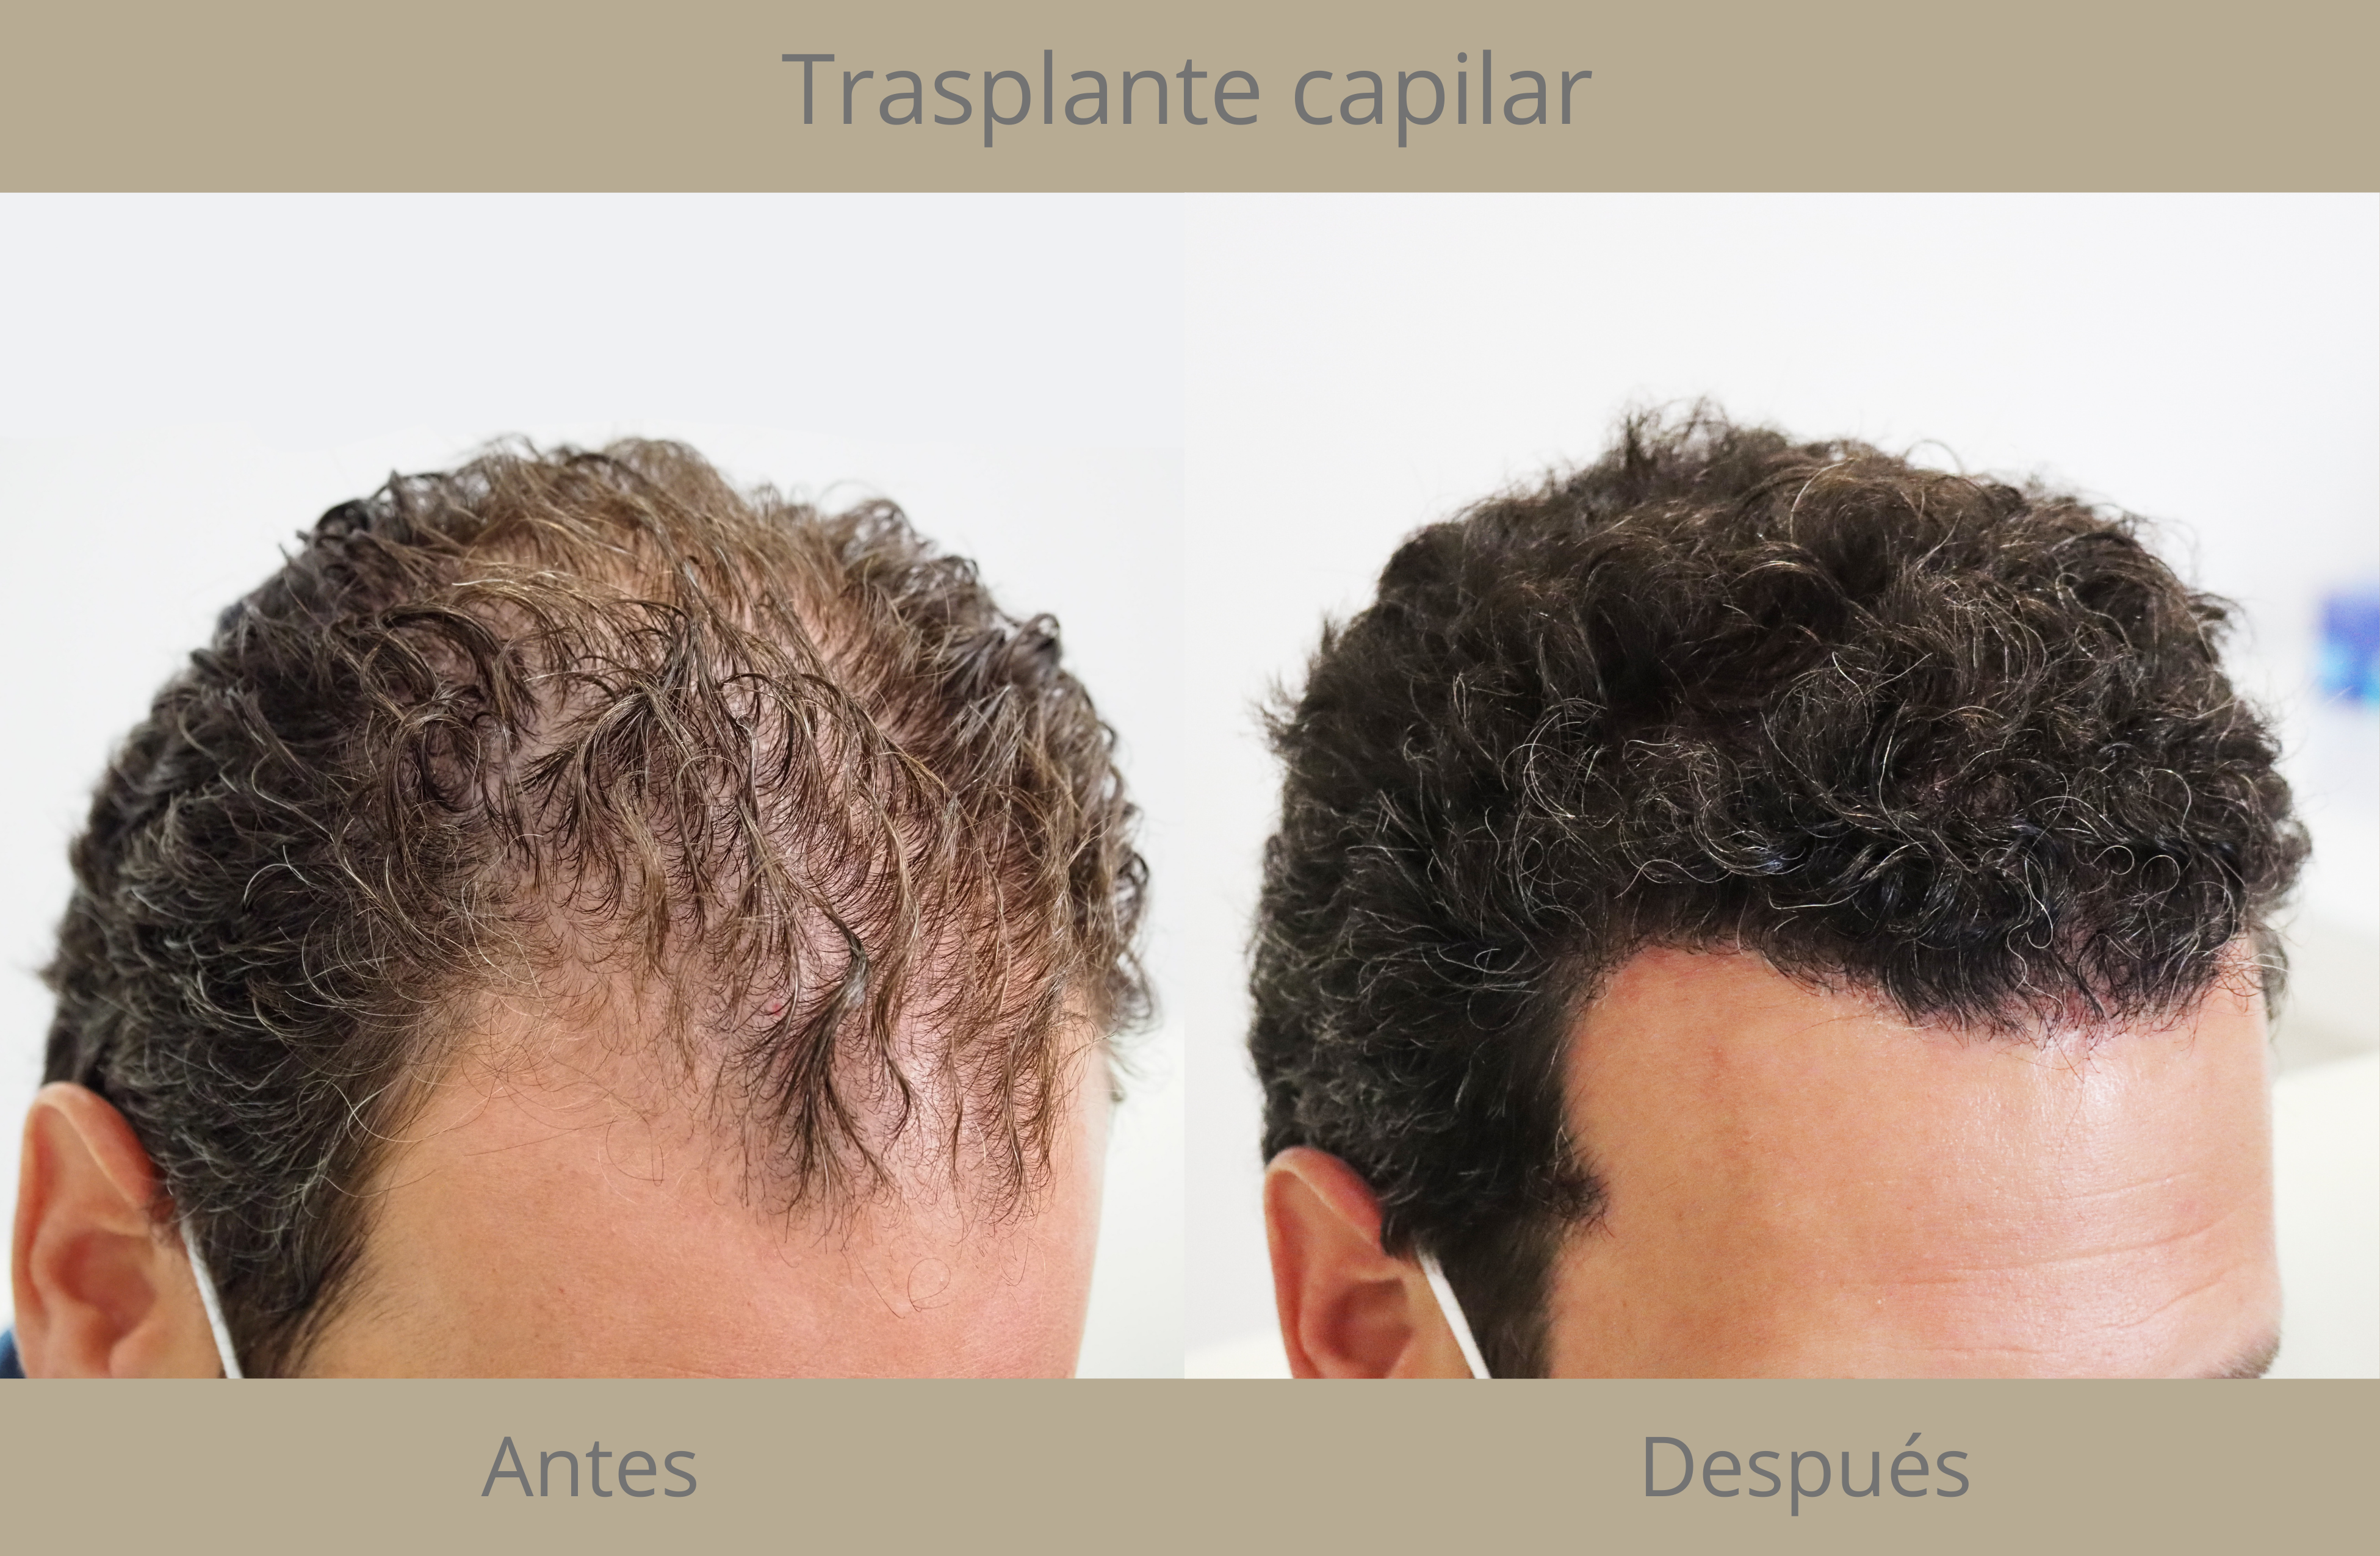 La alopecia androgenética Instituto Médico Prado